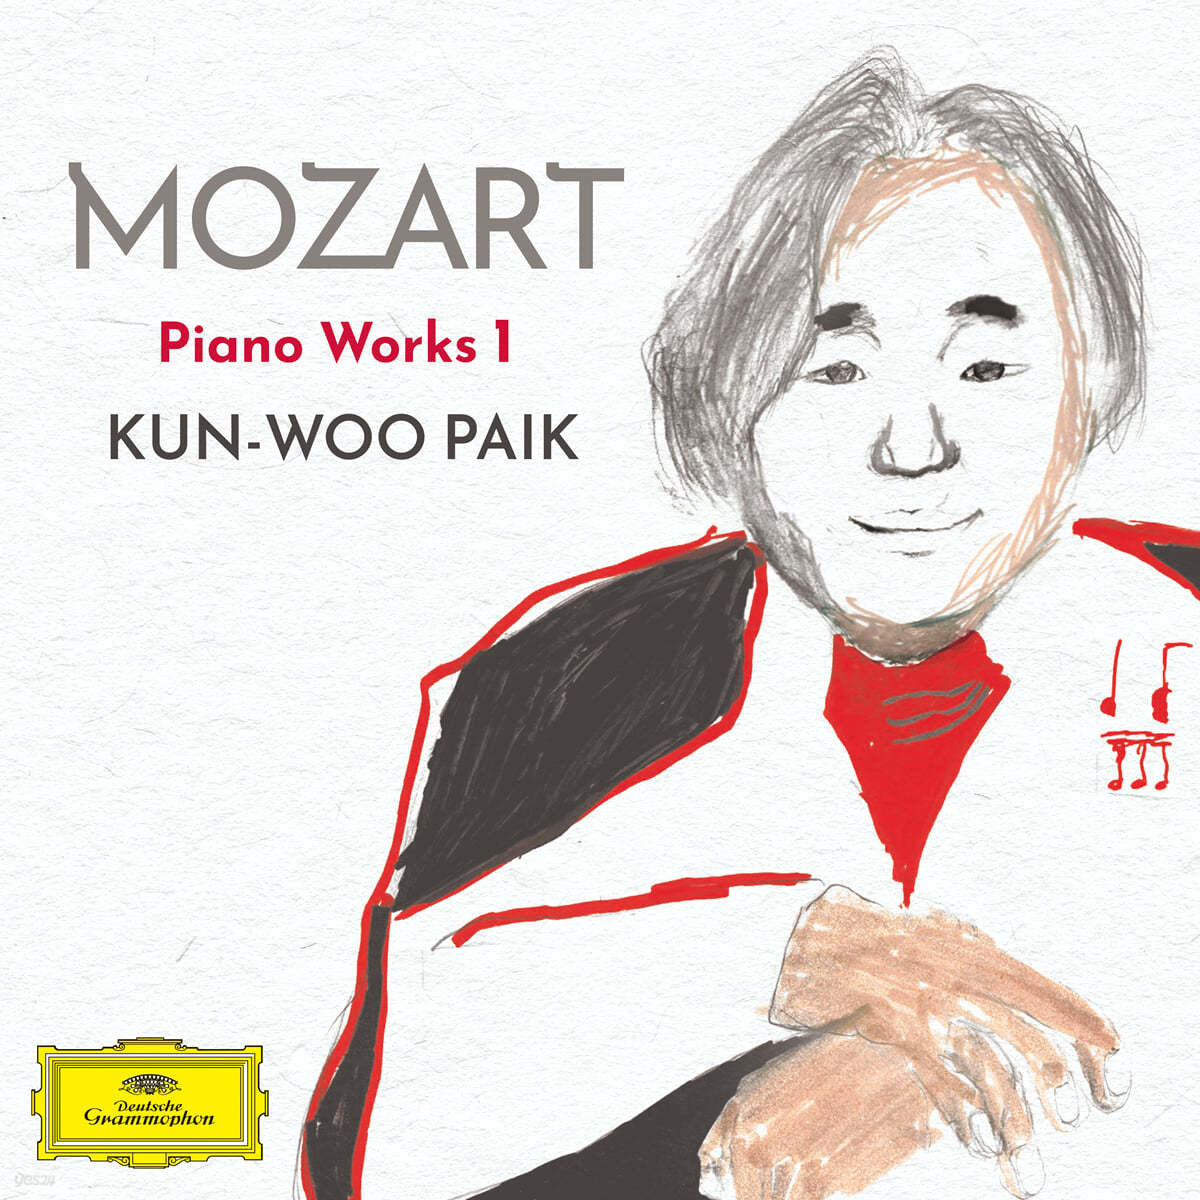 백건우 - 모차르트: 피아노 작품 1 (Mozart: Piano Works 1) 